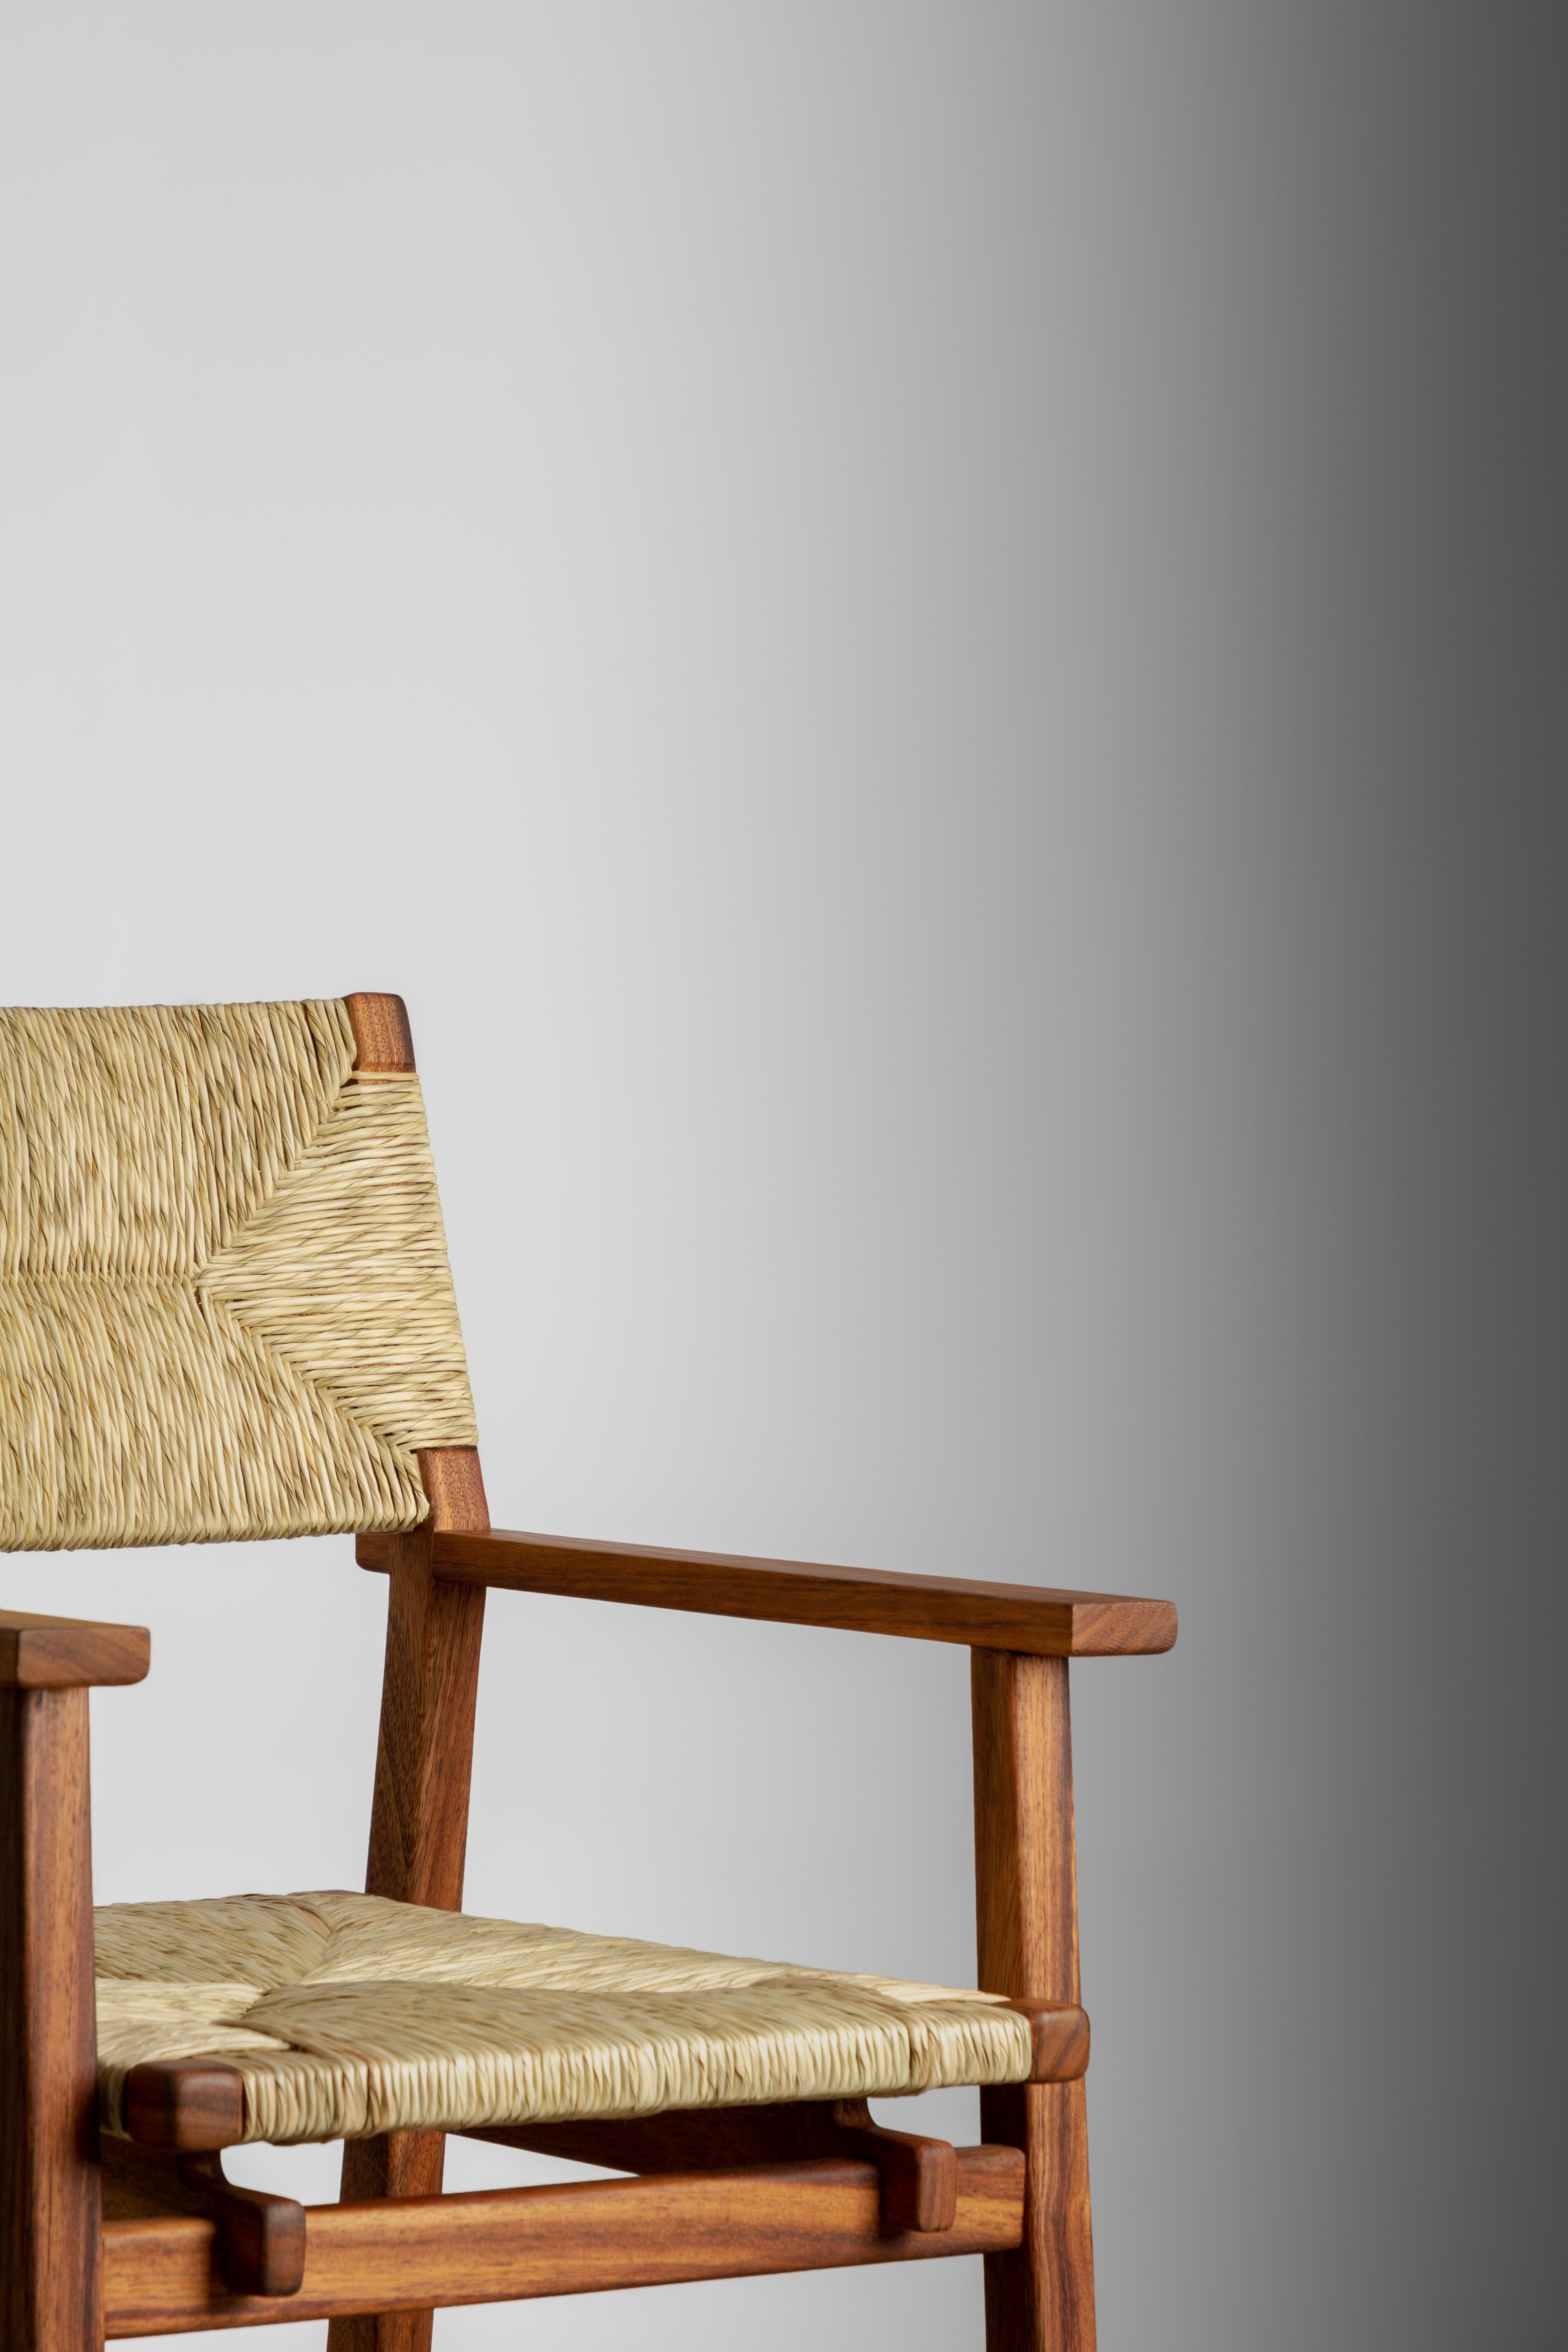 Palm geflochtene Armlehne Esszimmerstuhl. Die handgeflochtene Rückenlehne und die Sitzfläche aus Palmenholz verleihen dem klassischen, zurückhaltenden Design dieses Stuhls eine neue Note und machen ihn zu einem entspannten, aber dennoch eleganten